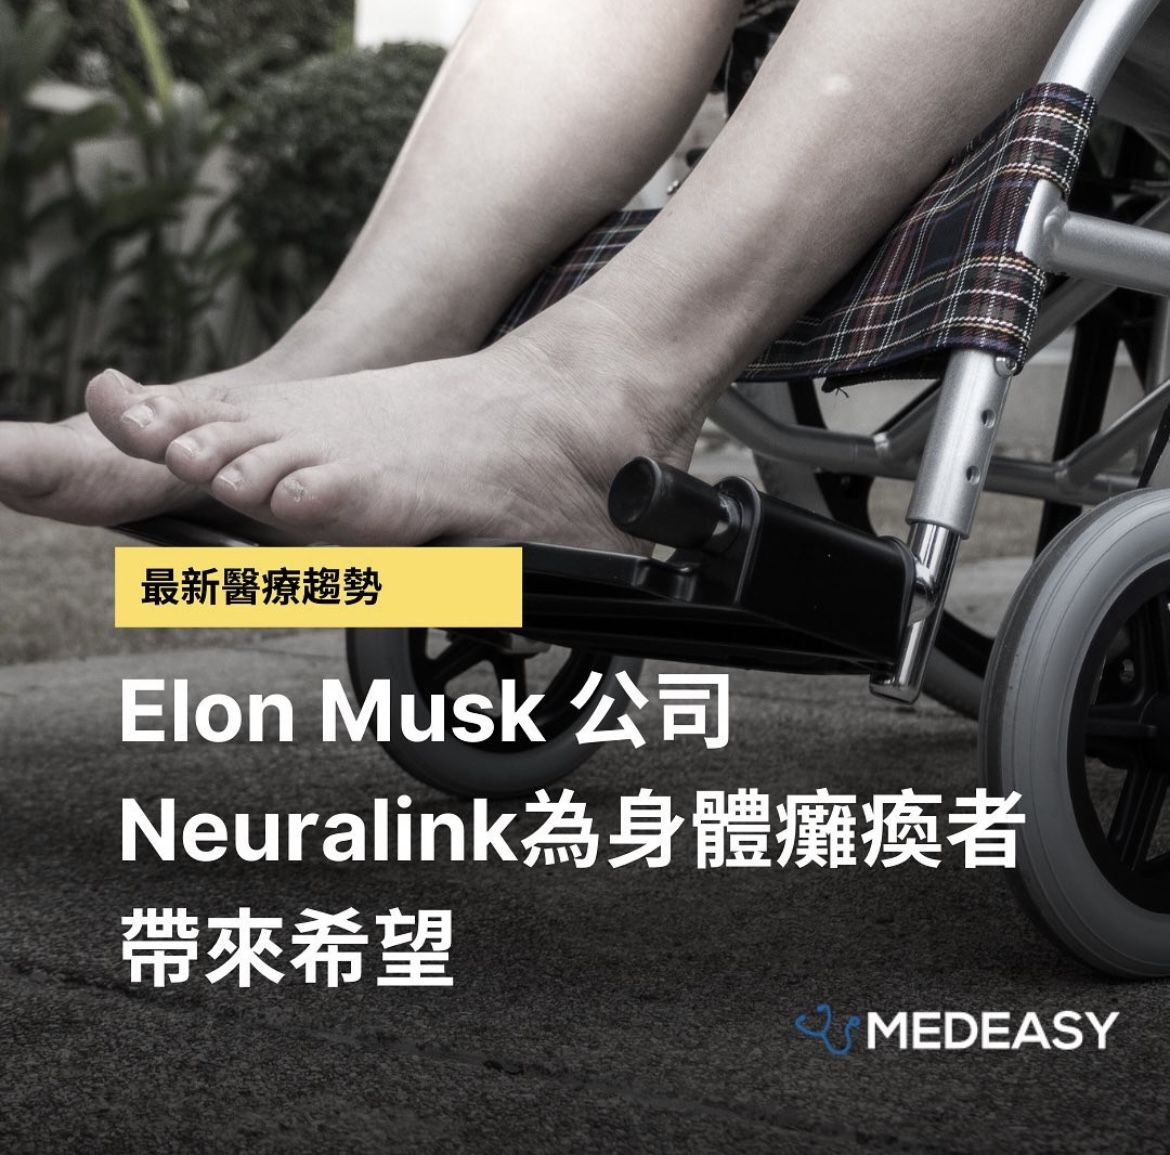 【醫療趨勢】Elon Musk 公司Neuralink為身體癱瘓者帶來希望